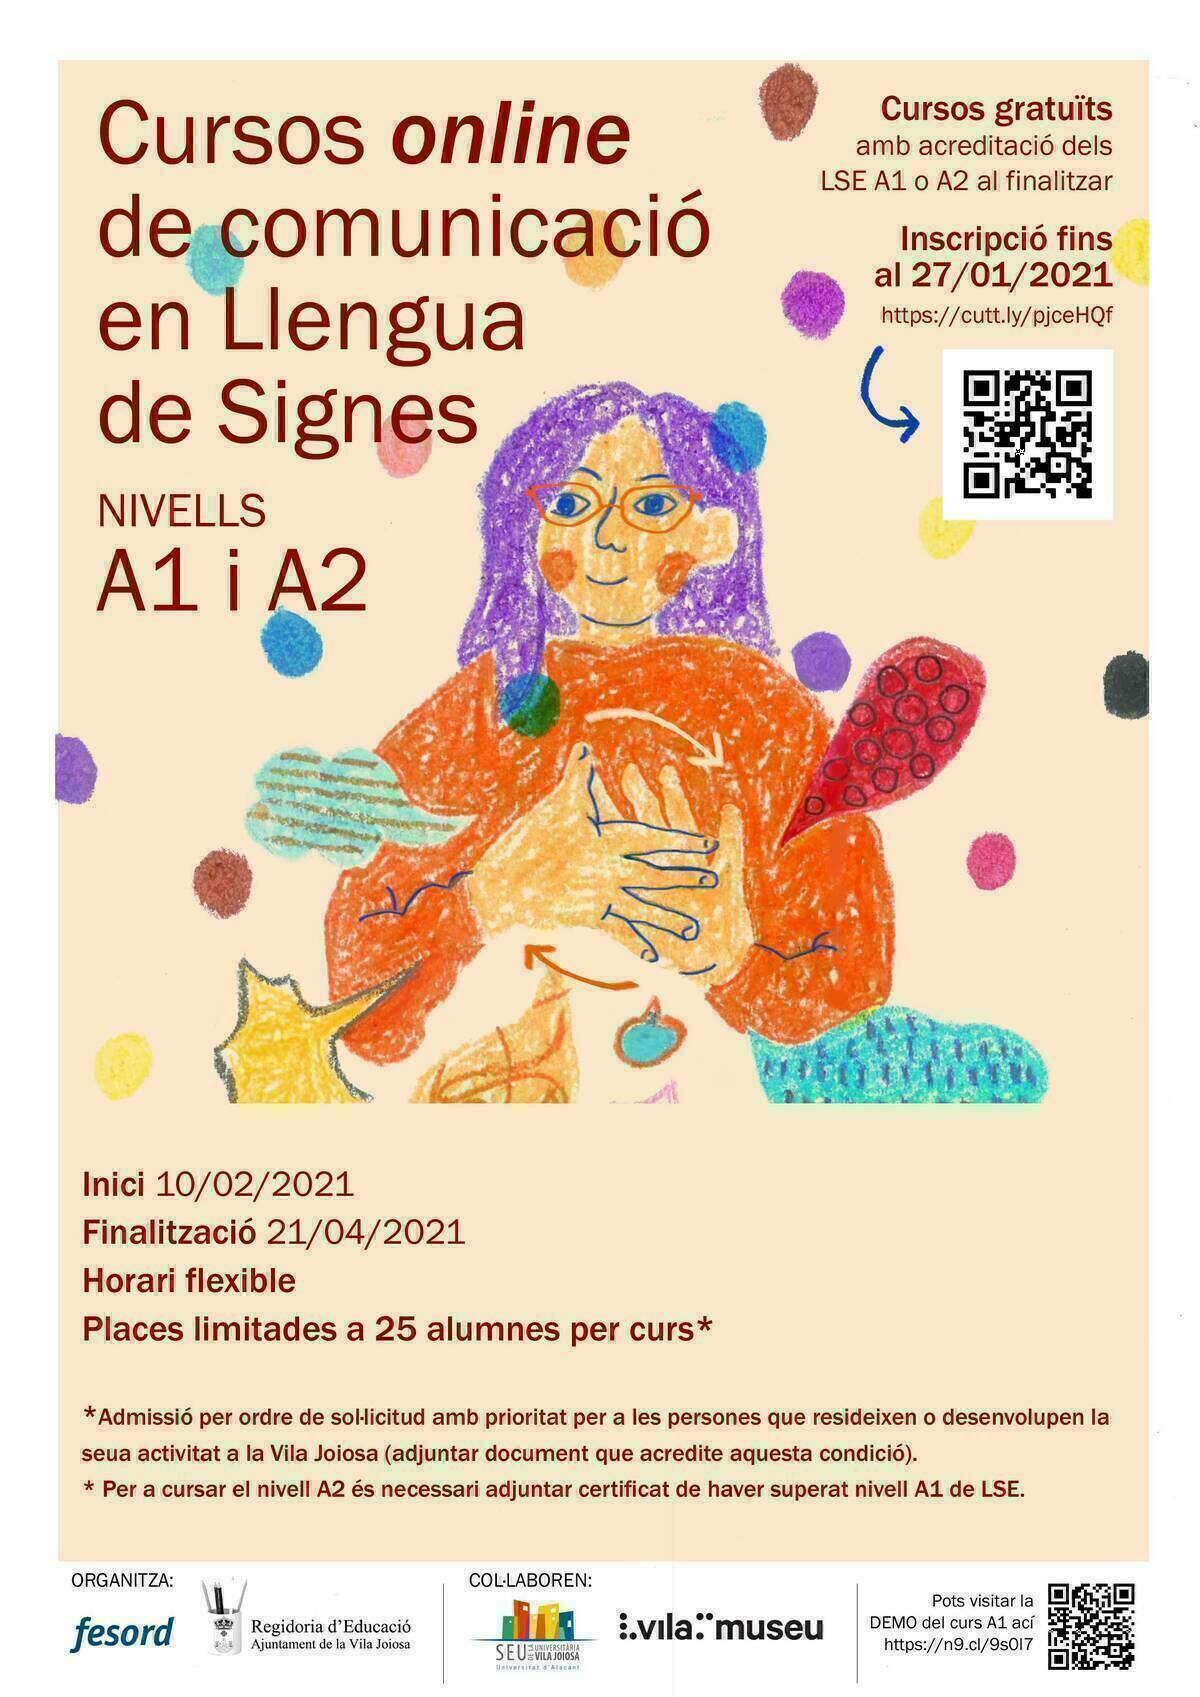 El área de Educación de la Vila Joiosa lanza dos nuevos cursos online de lengua de signos española  de niveles A1 y A2